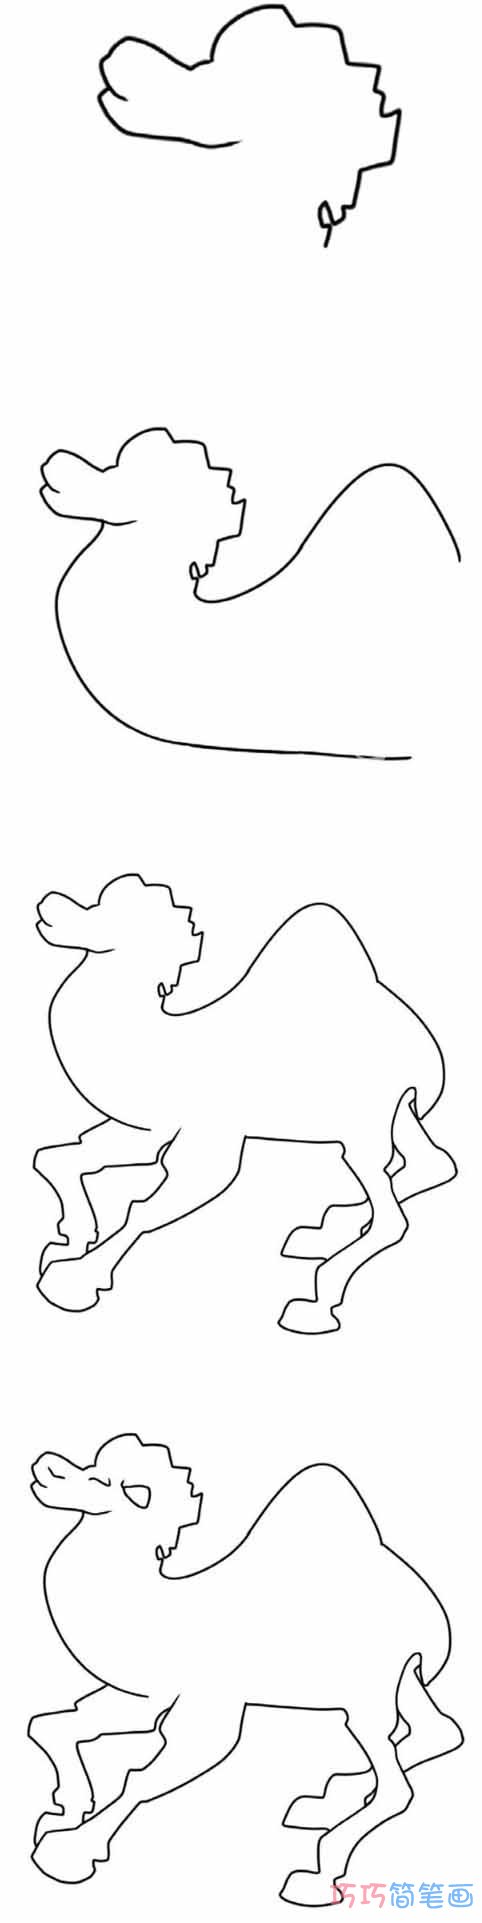 骆驼怎么画简洁好看_带步骤图骆驼简笔画图片